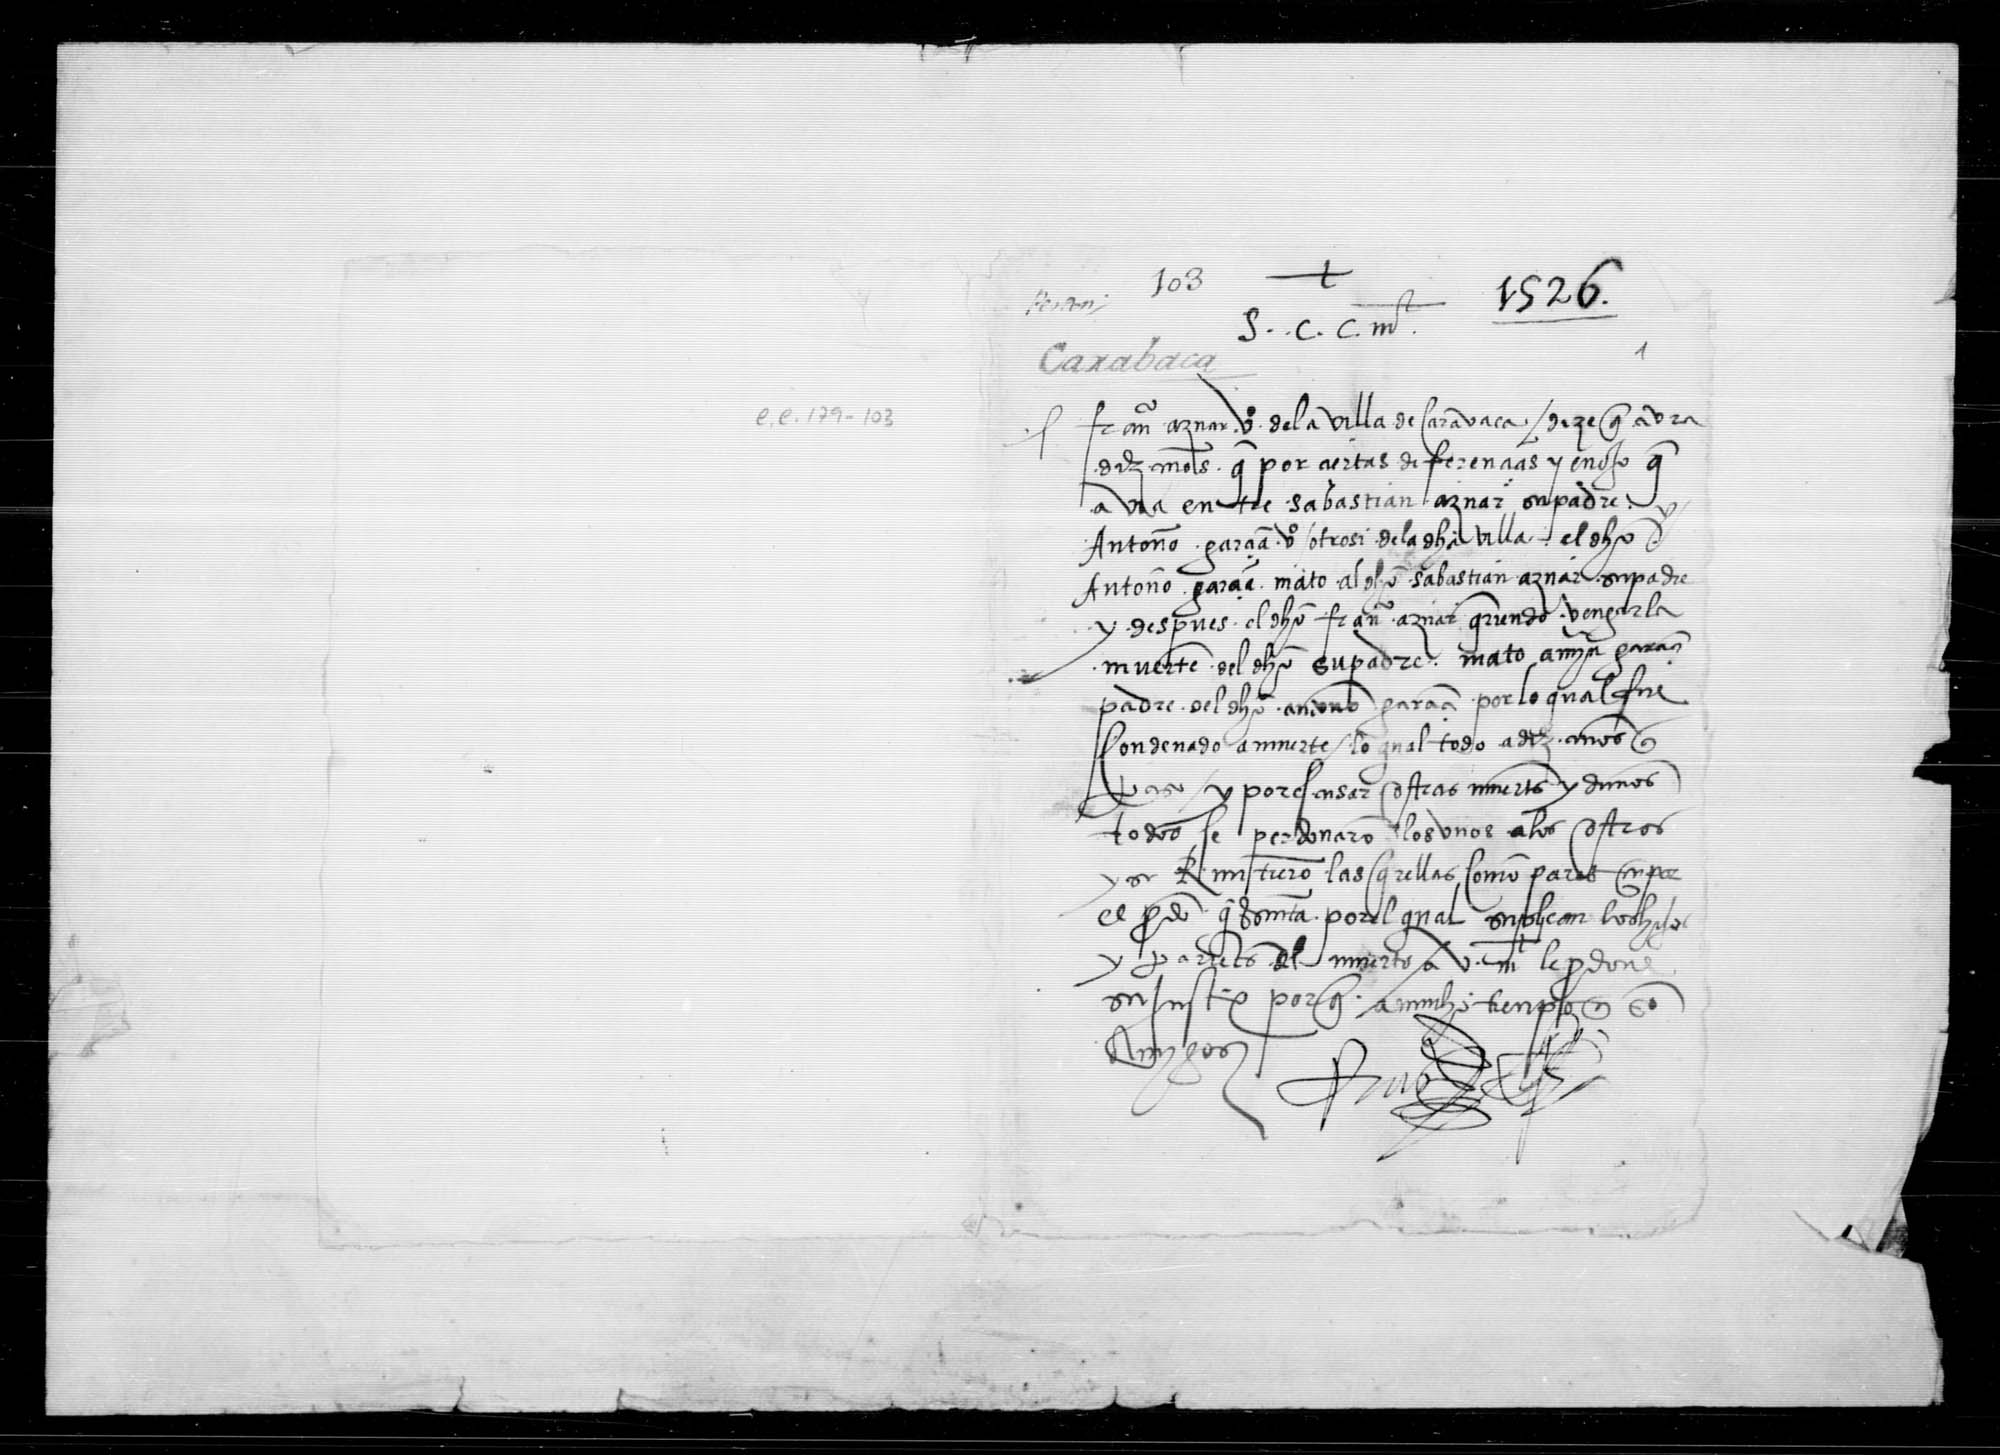 Documentación relativa al perdón real que solicita Francisco Aznar, vecino de Caravaca, por la muerte de Martín García, vecino de esa villa.